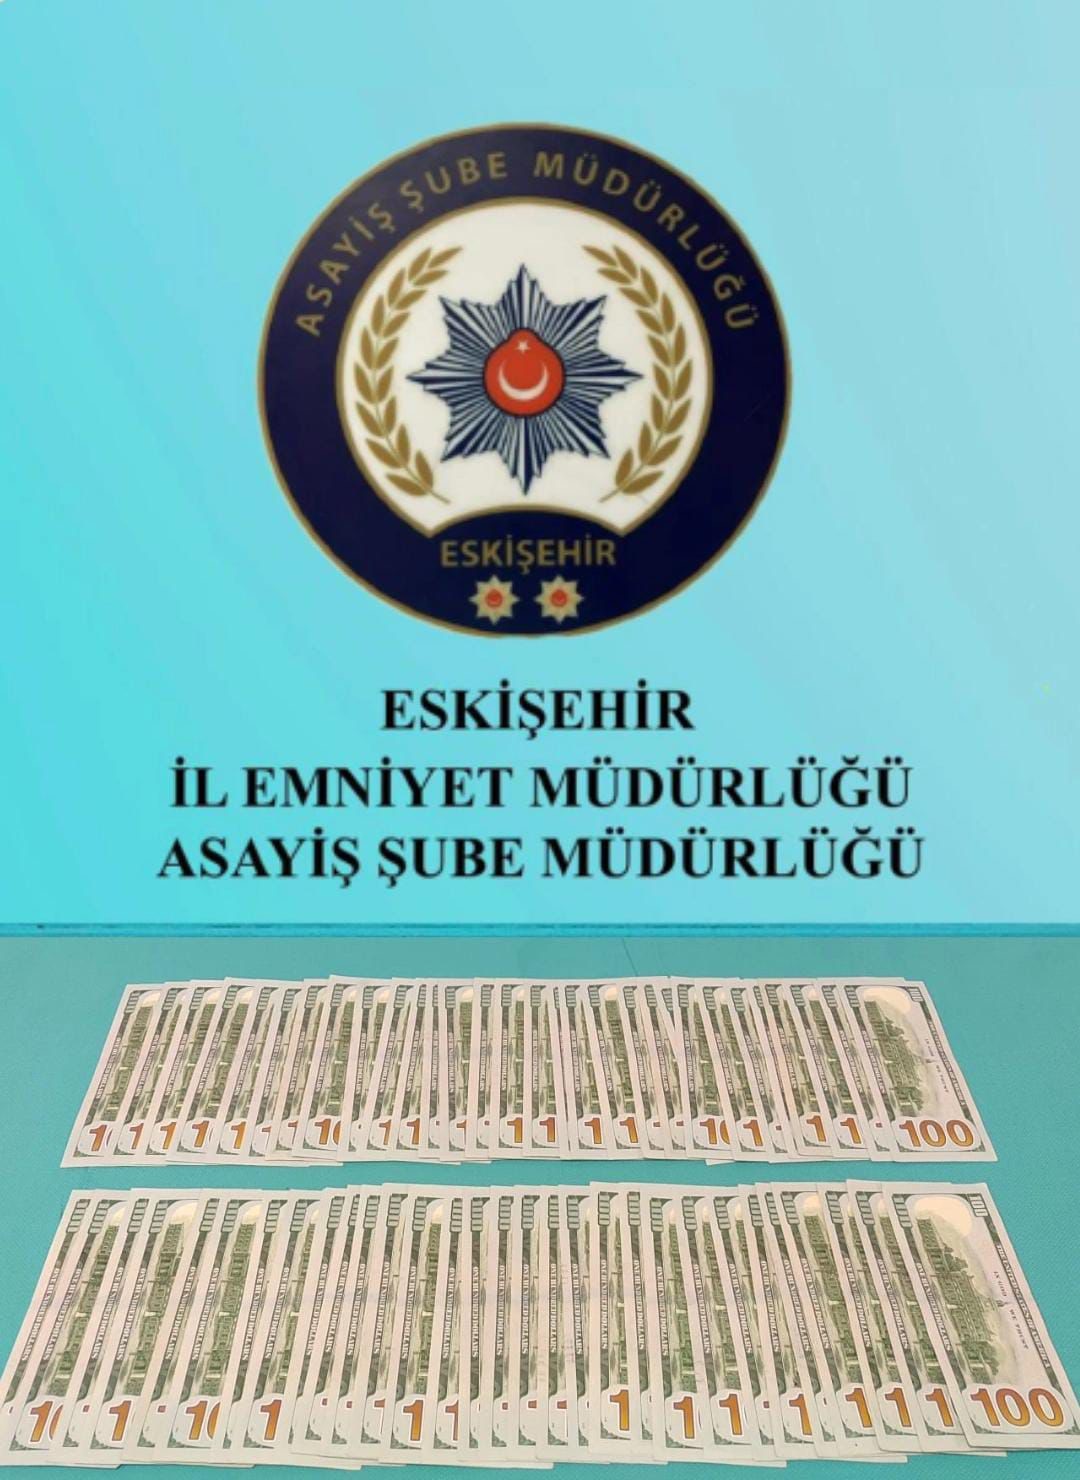 Eskişehir’de evden hırsızlık olaylarında toplam 23 şüpheli yakalandı
